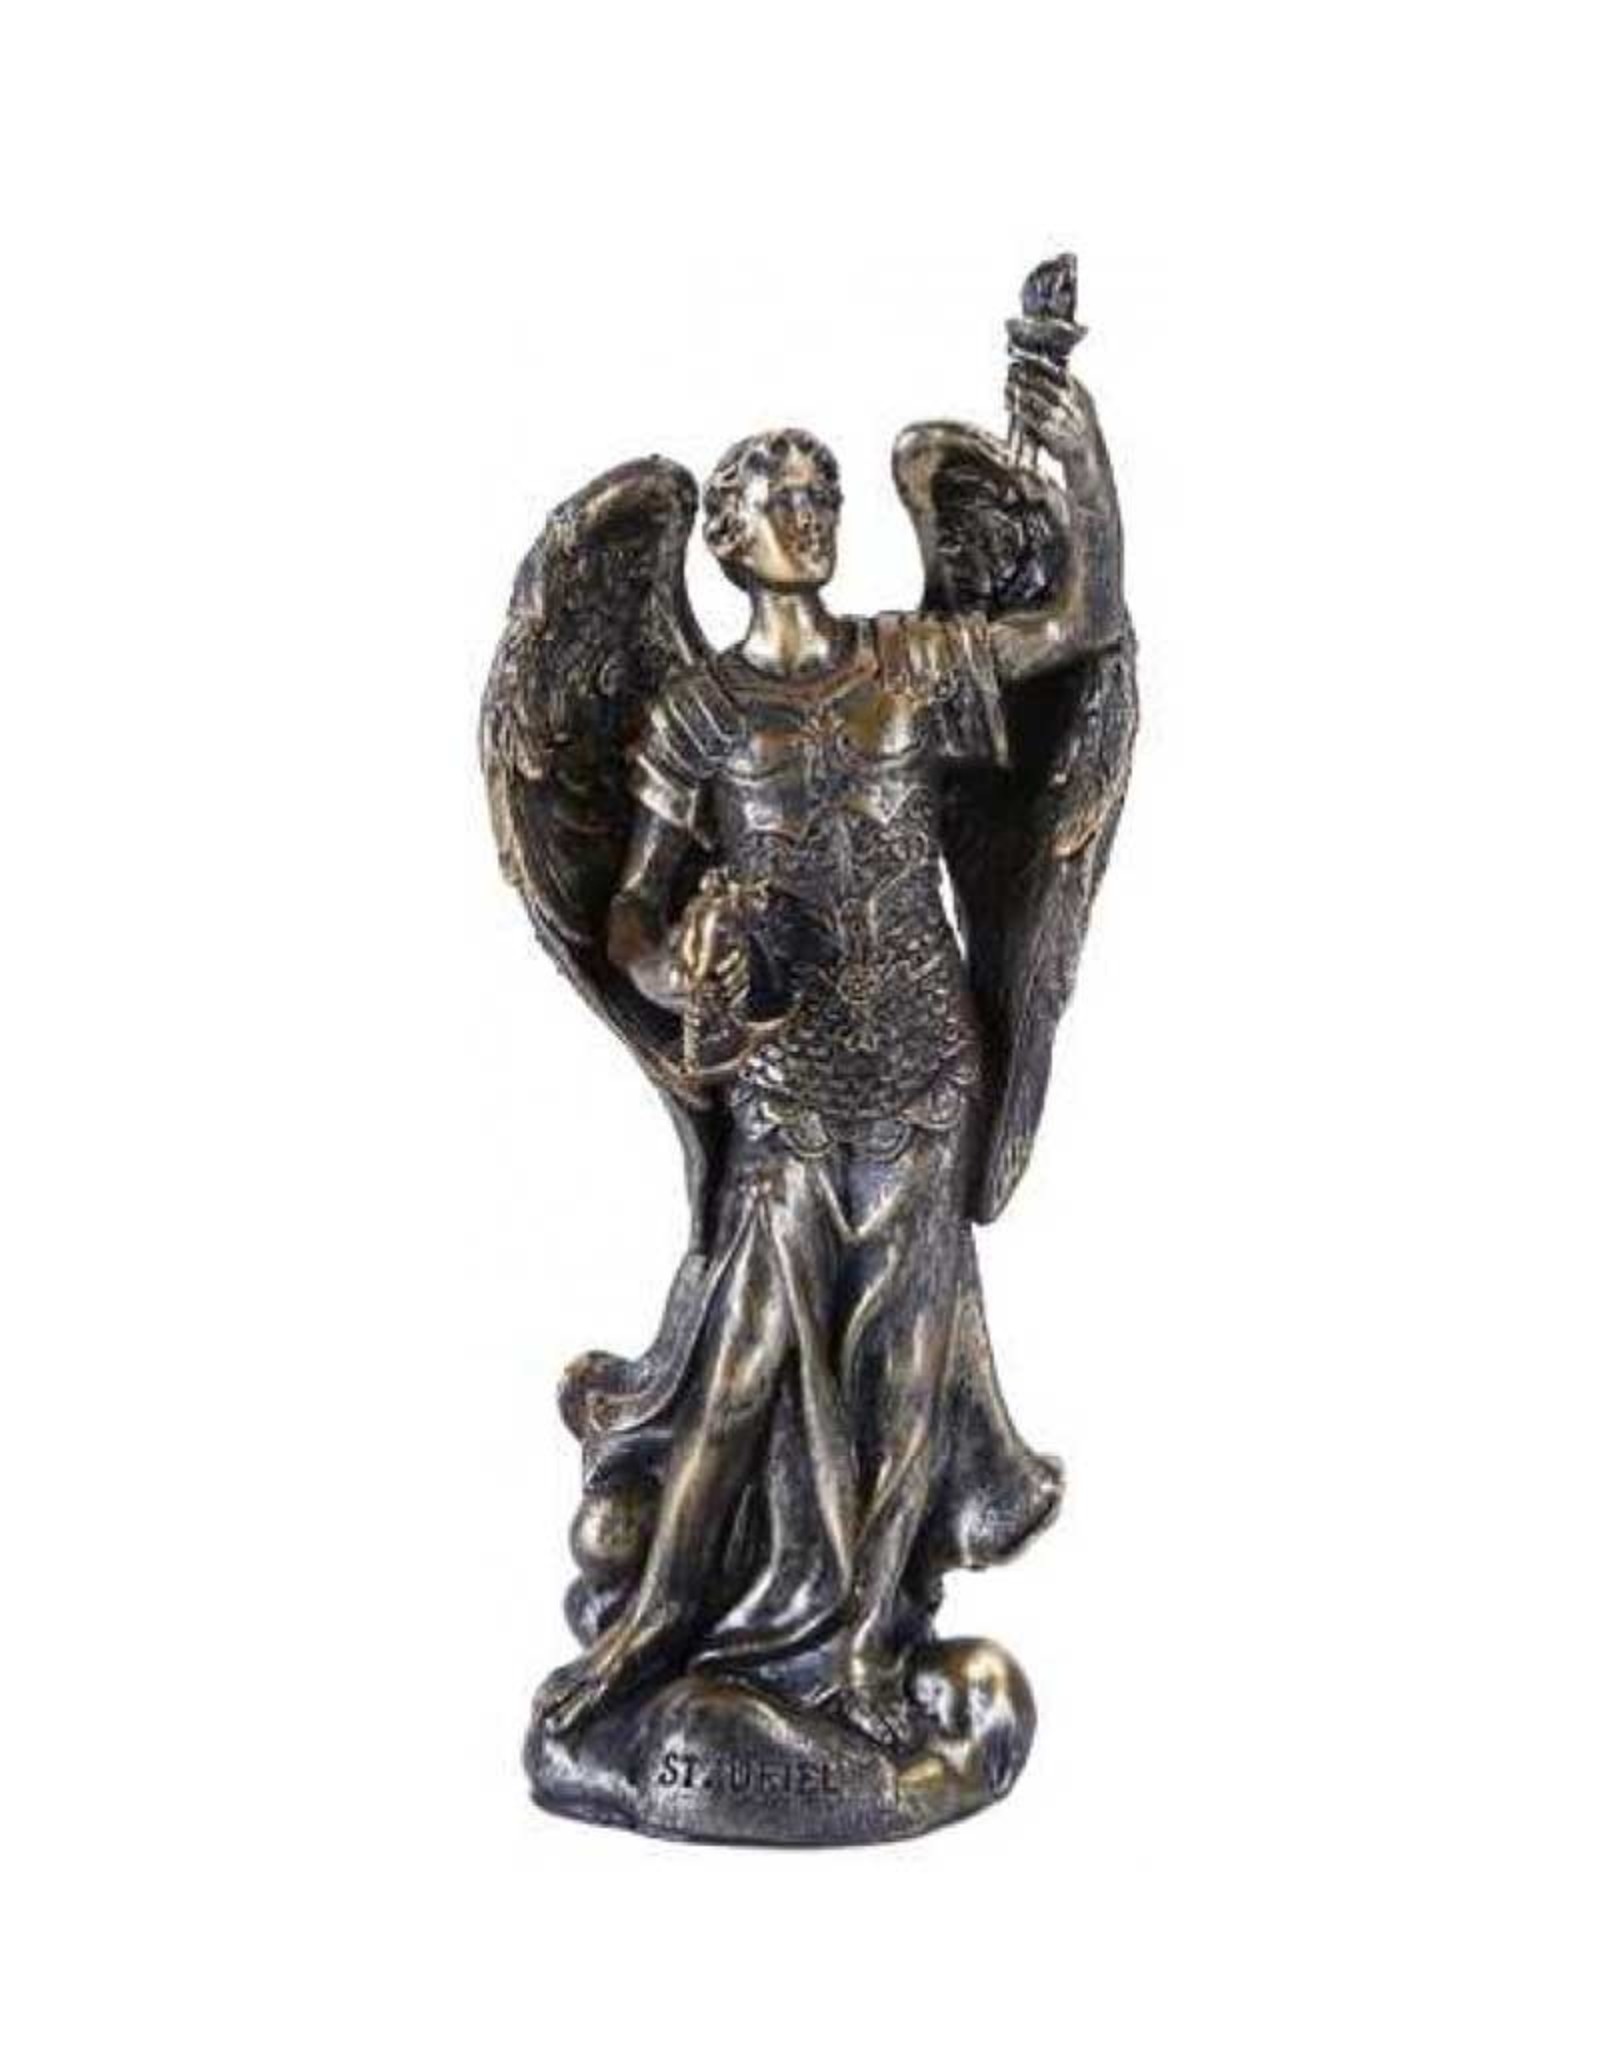 Archangel Uriel Statue 5"